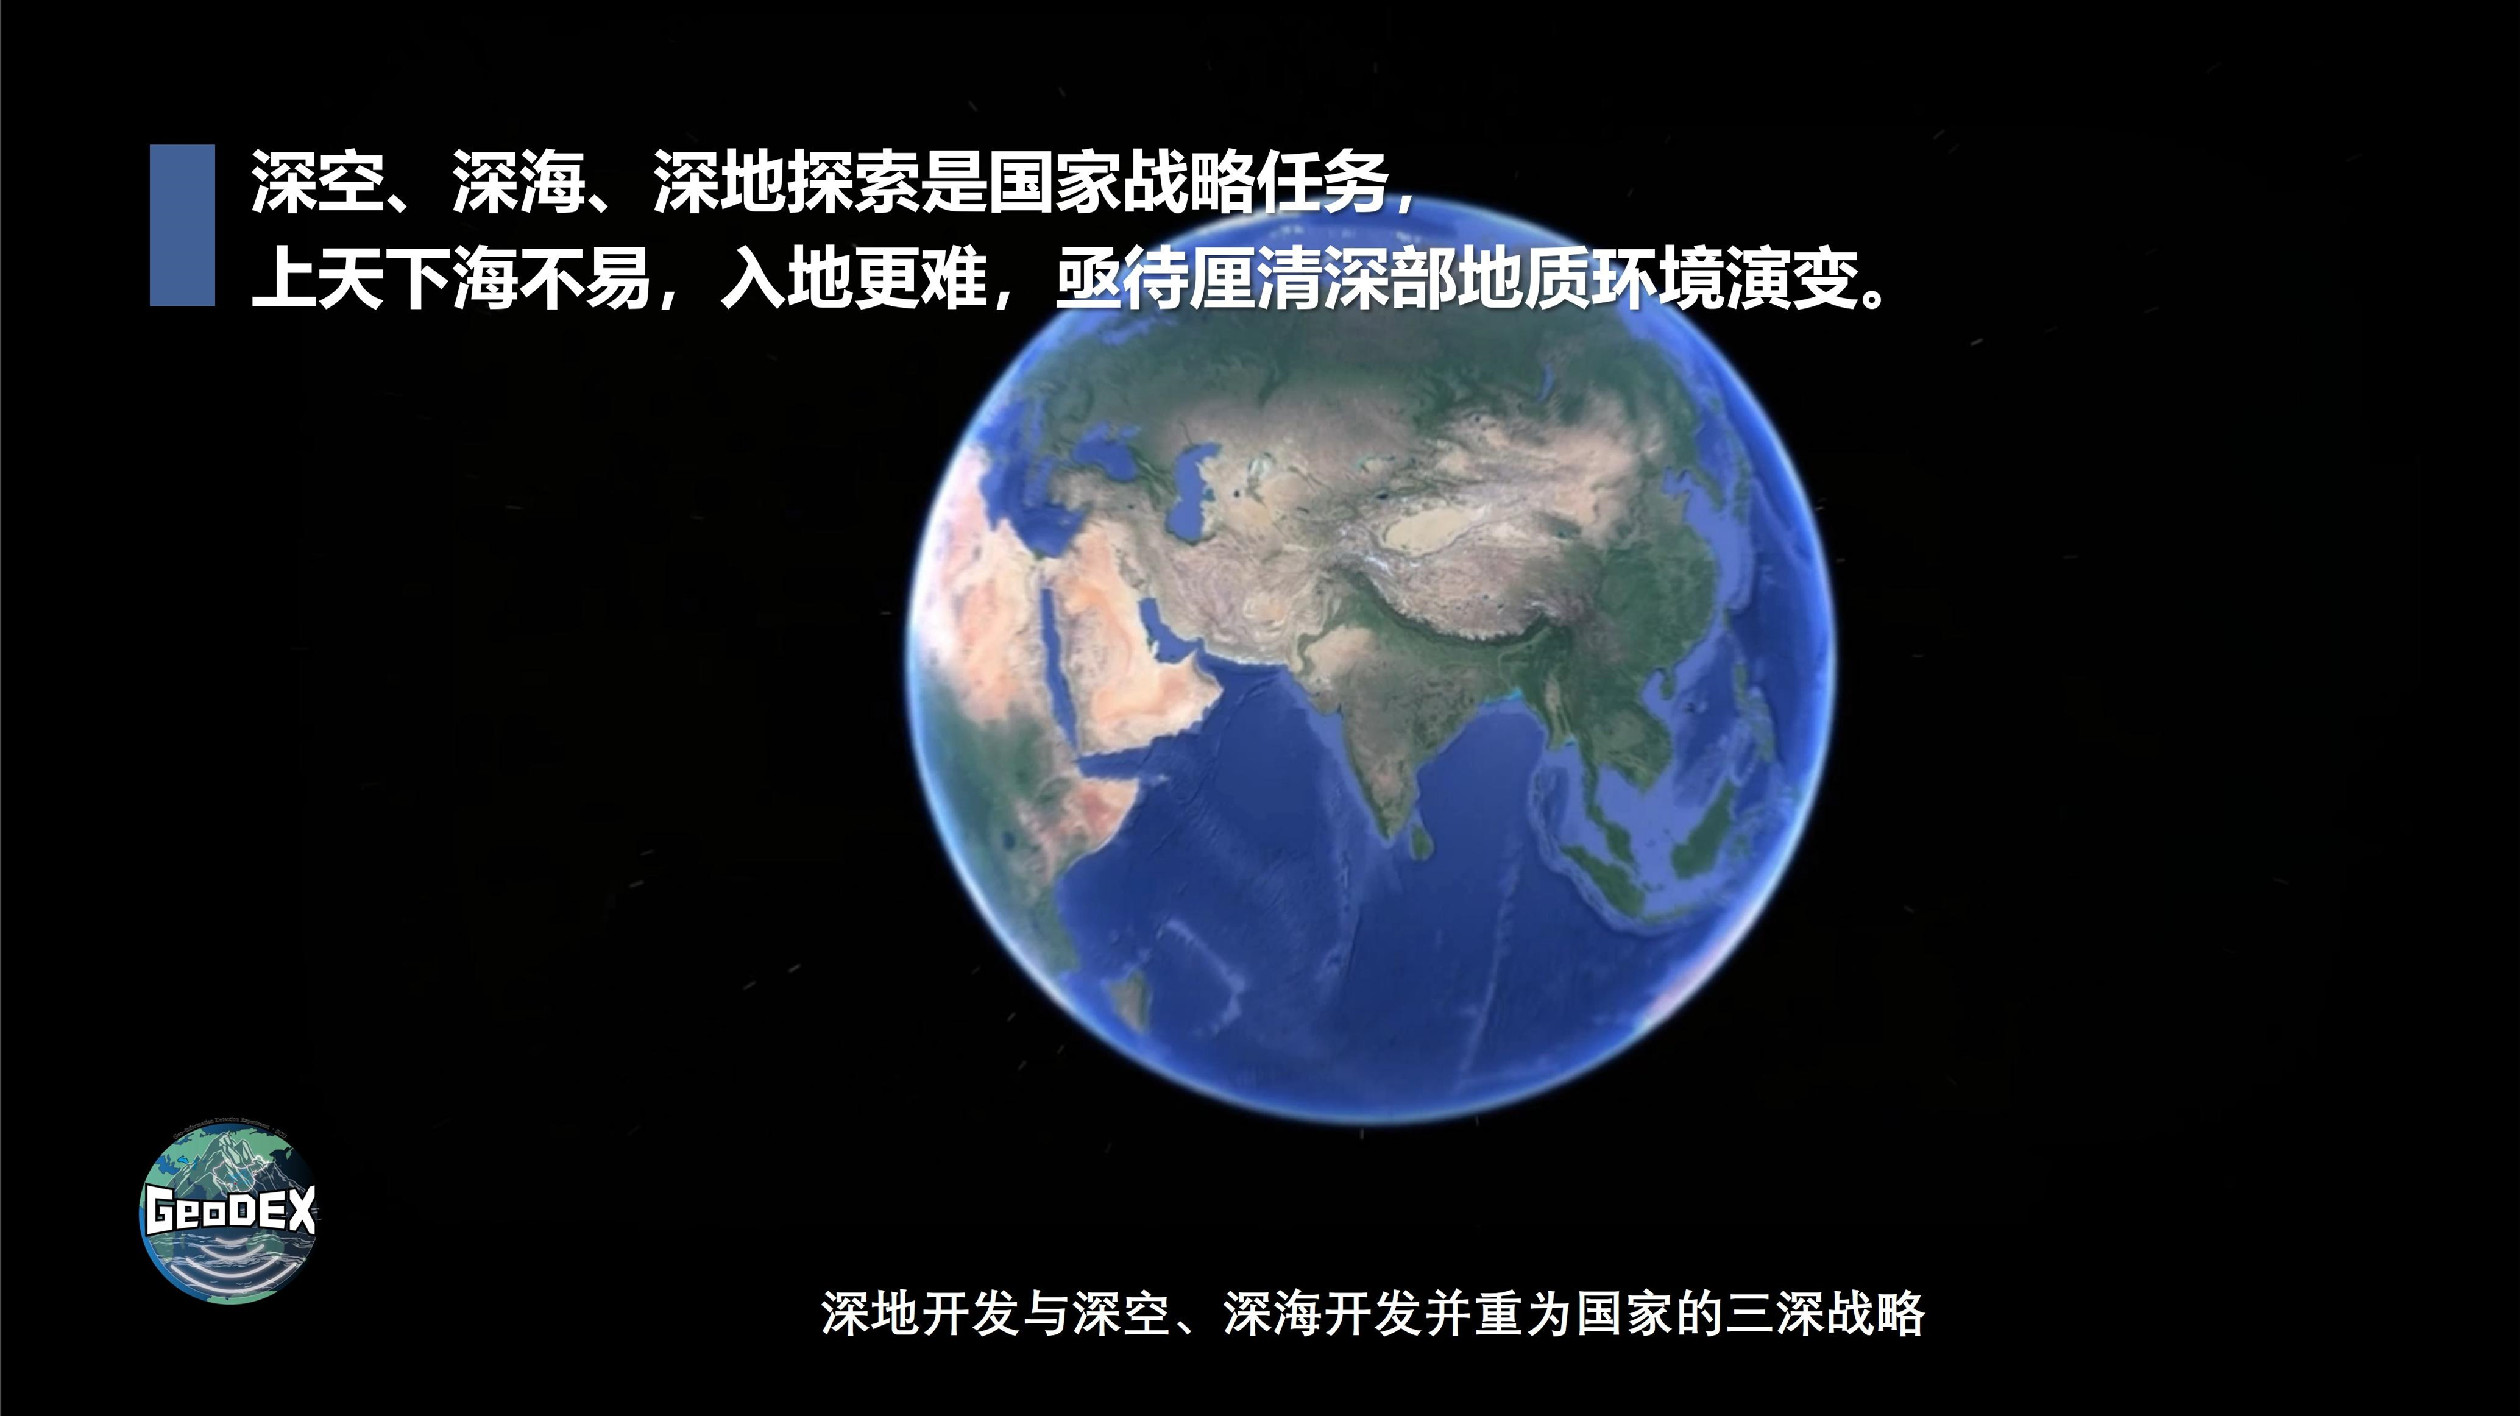 謝和平院士領銜深地科學與地質時變原位探測團隊入駐世界最深中國錦屏地下實驗室